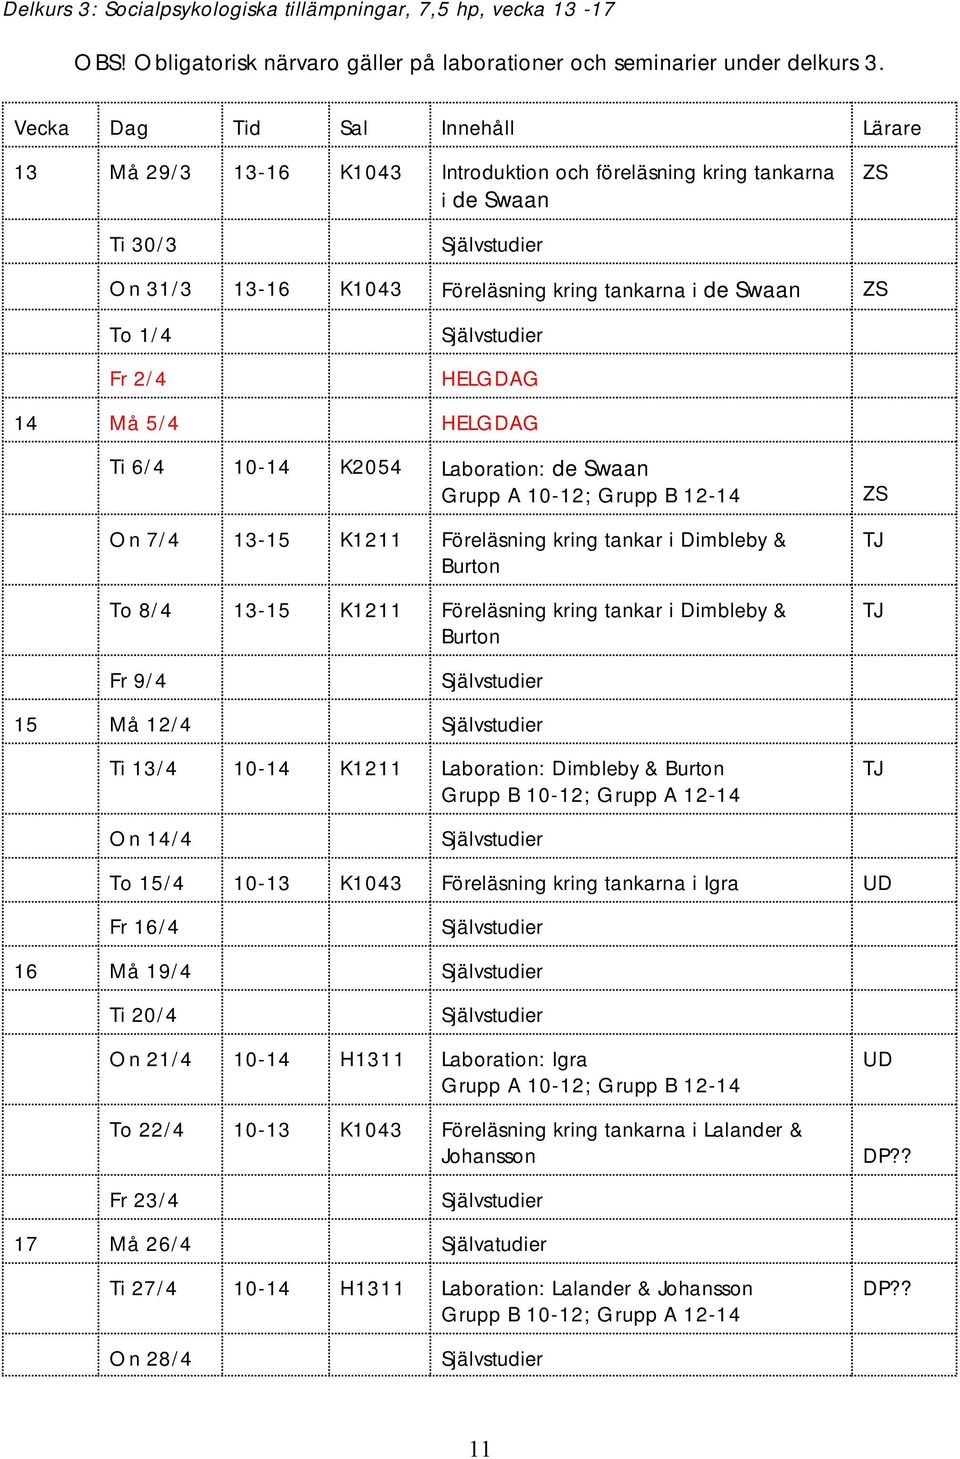 14 Må 5/4 HELGDAG Ti 6/4 10-14 K2054 Laboration: de Swaan Grupp A 10-12; Grupp B 12-14 On 7/4 13-15 K1211 Föreläsning kring tankar i Dimbleby & Burton To 8/4 13-15 K1211 Föreläsning kring tankar i